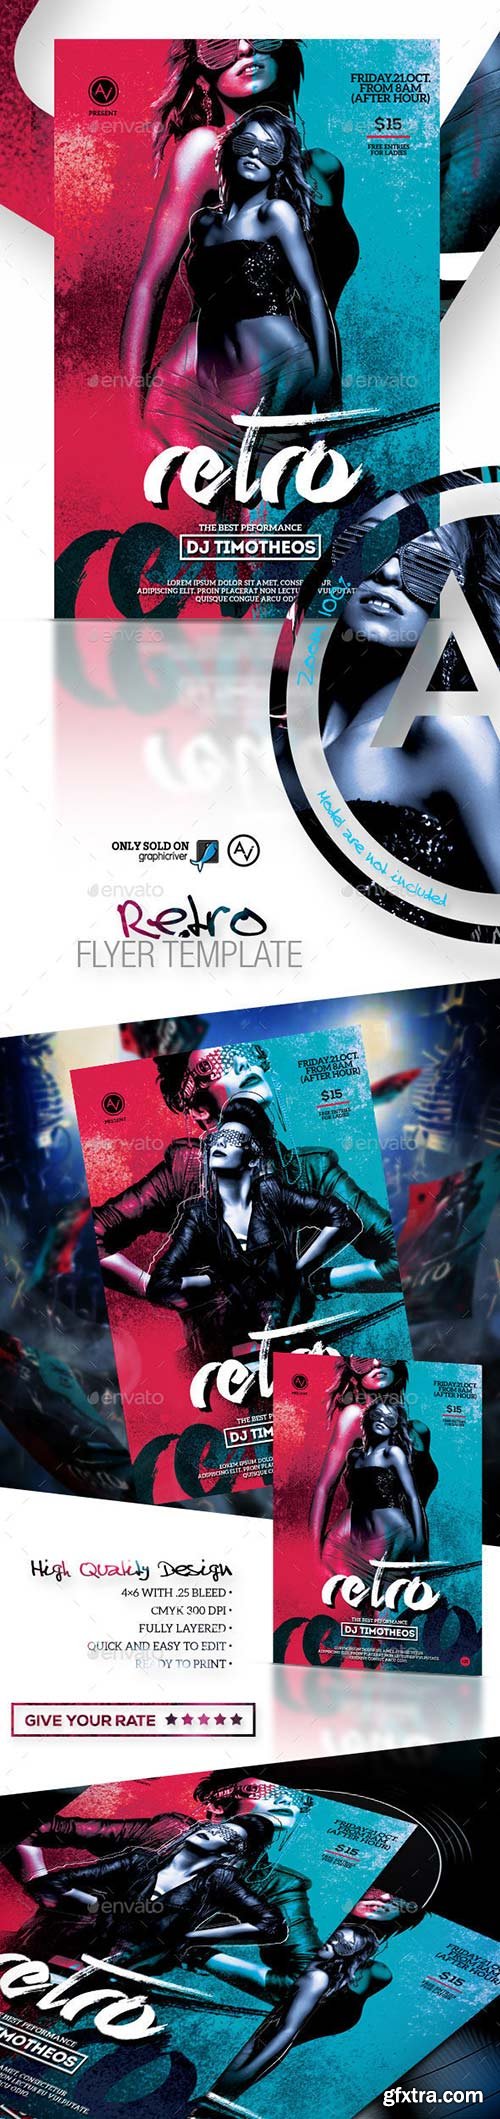 Graphicriver - Retro Flyer Template 8791076